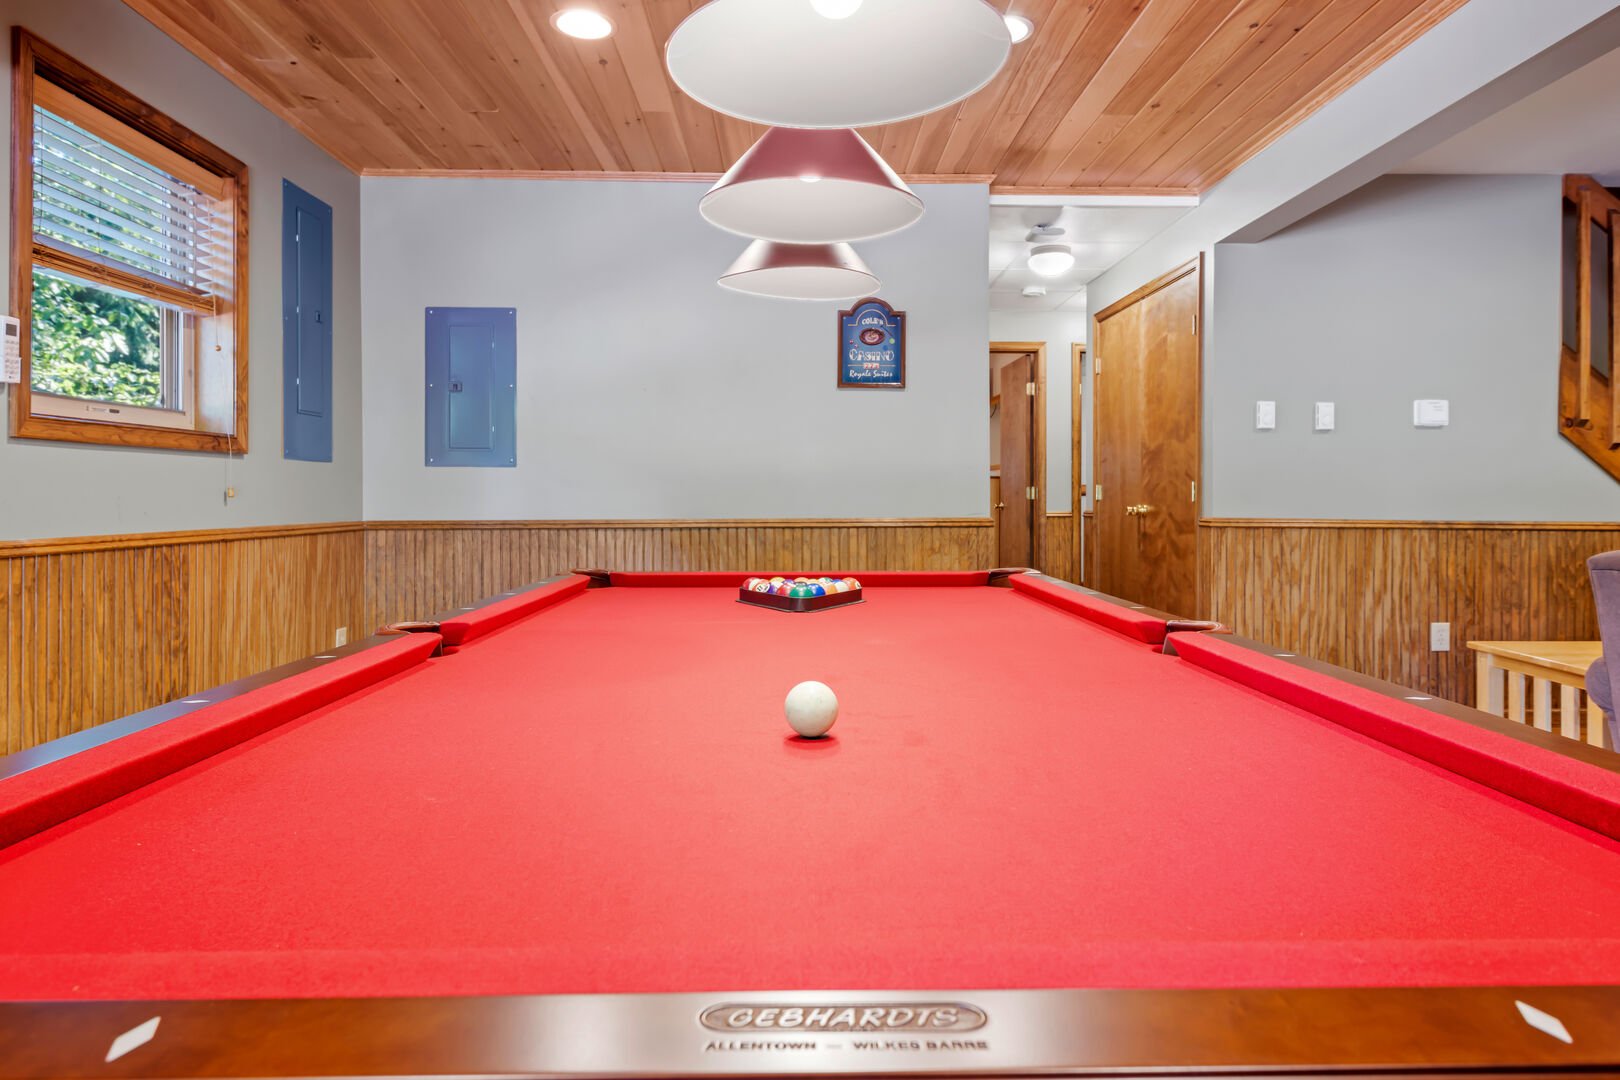 red velvet pool table in basement